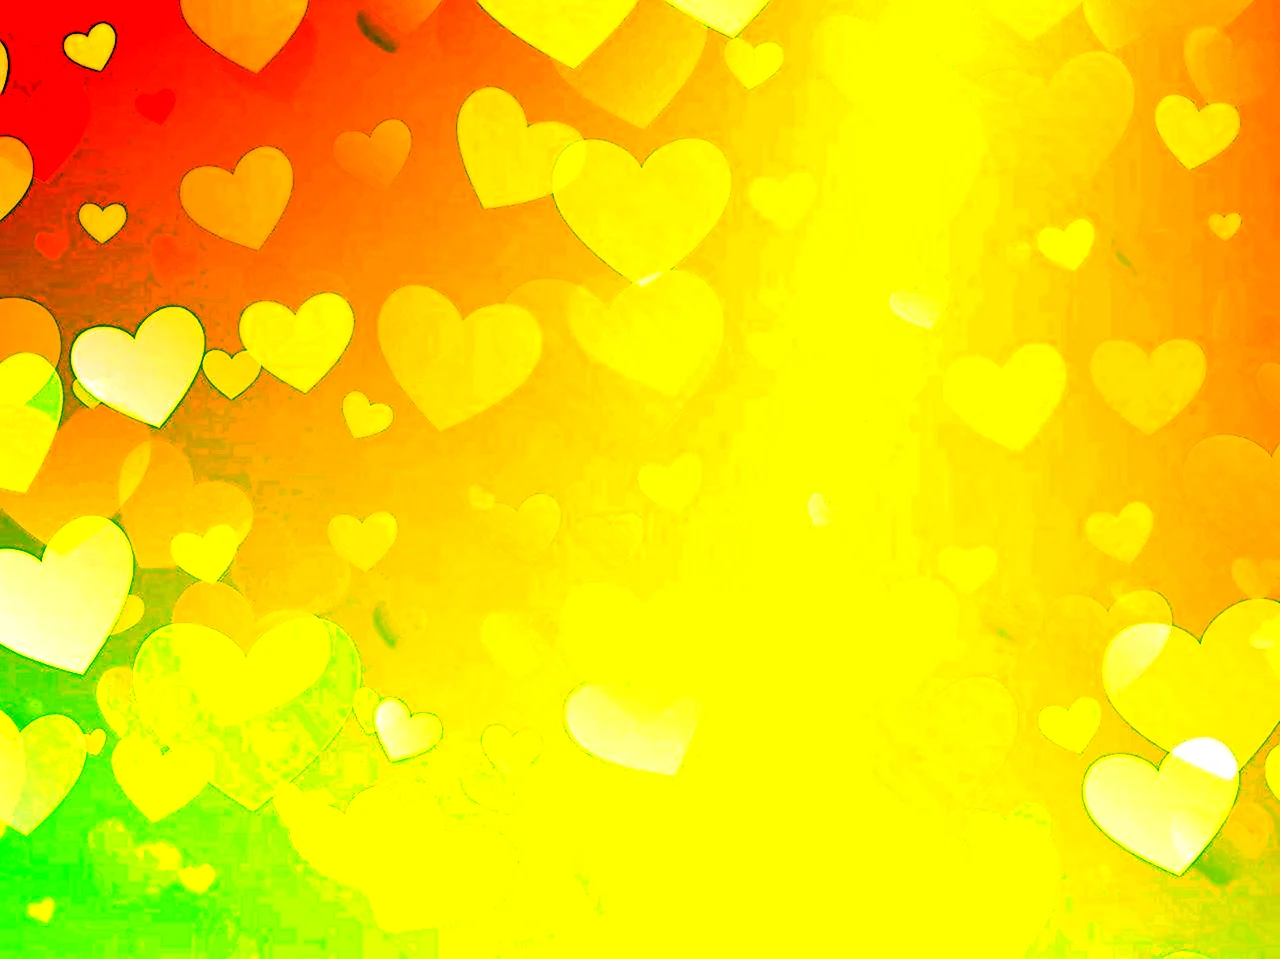 Сердце на желтом фоне